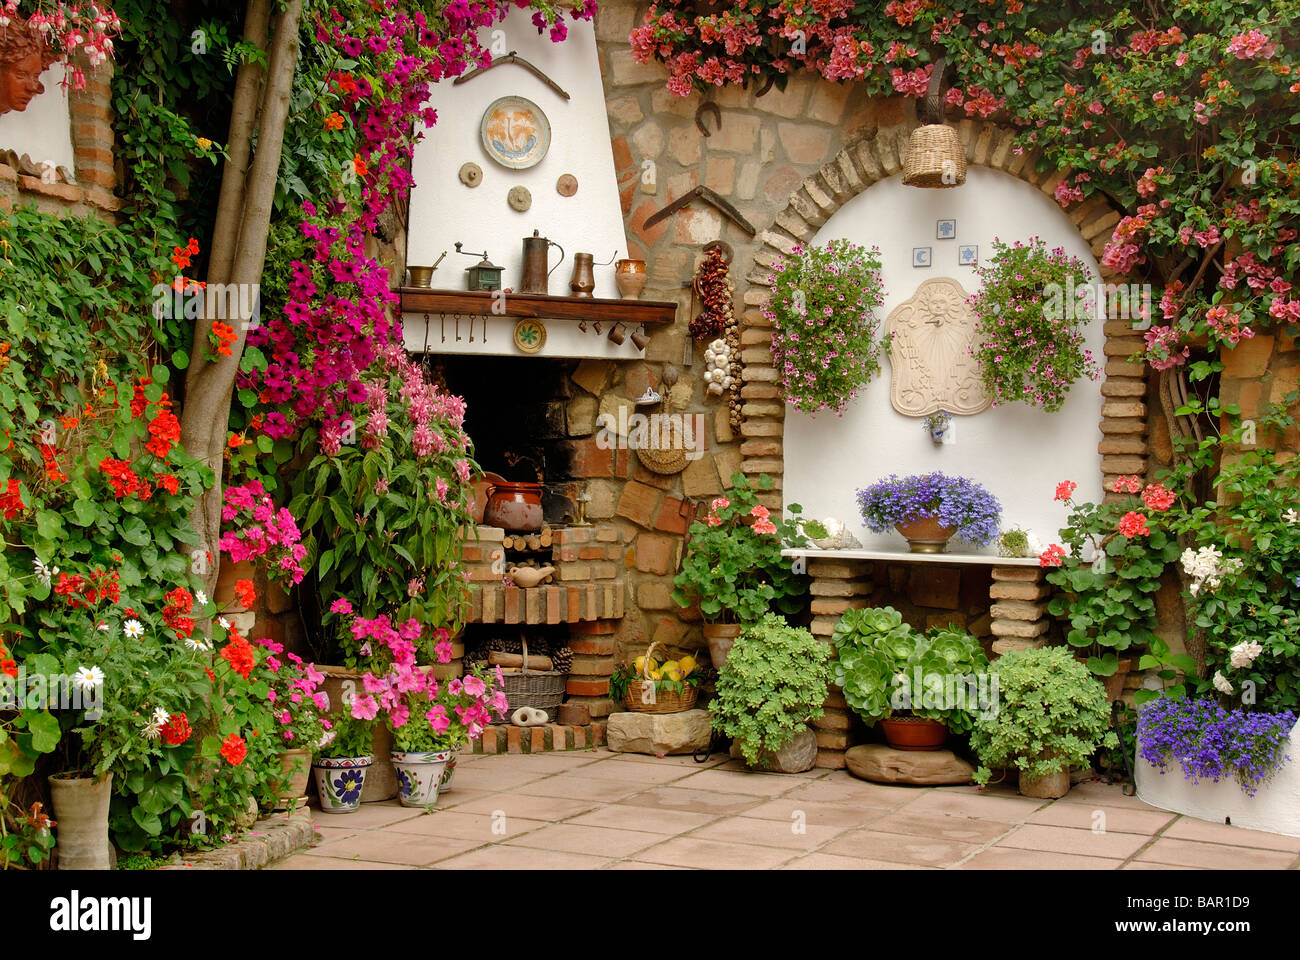 Andalusien Patio Patios de Mayo Blumen in voller Blüte Spanien Spanisch Patios Stockfoto